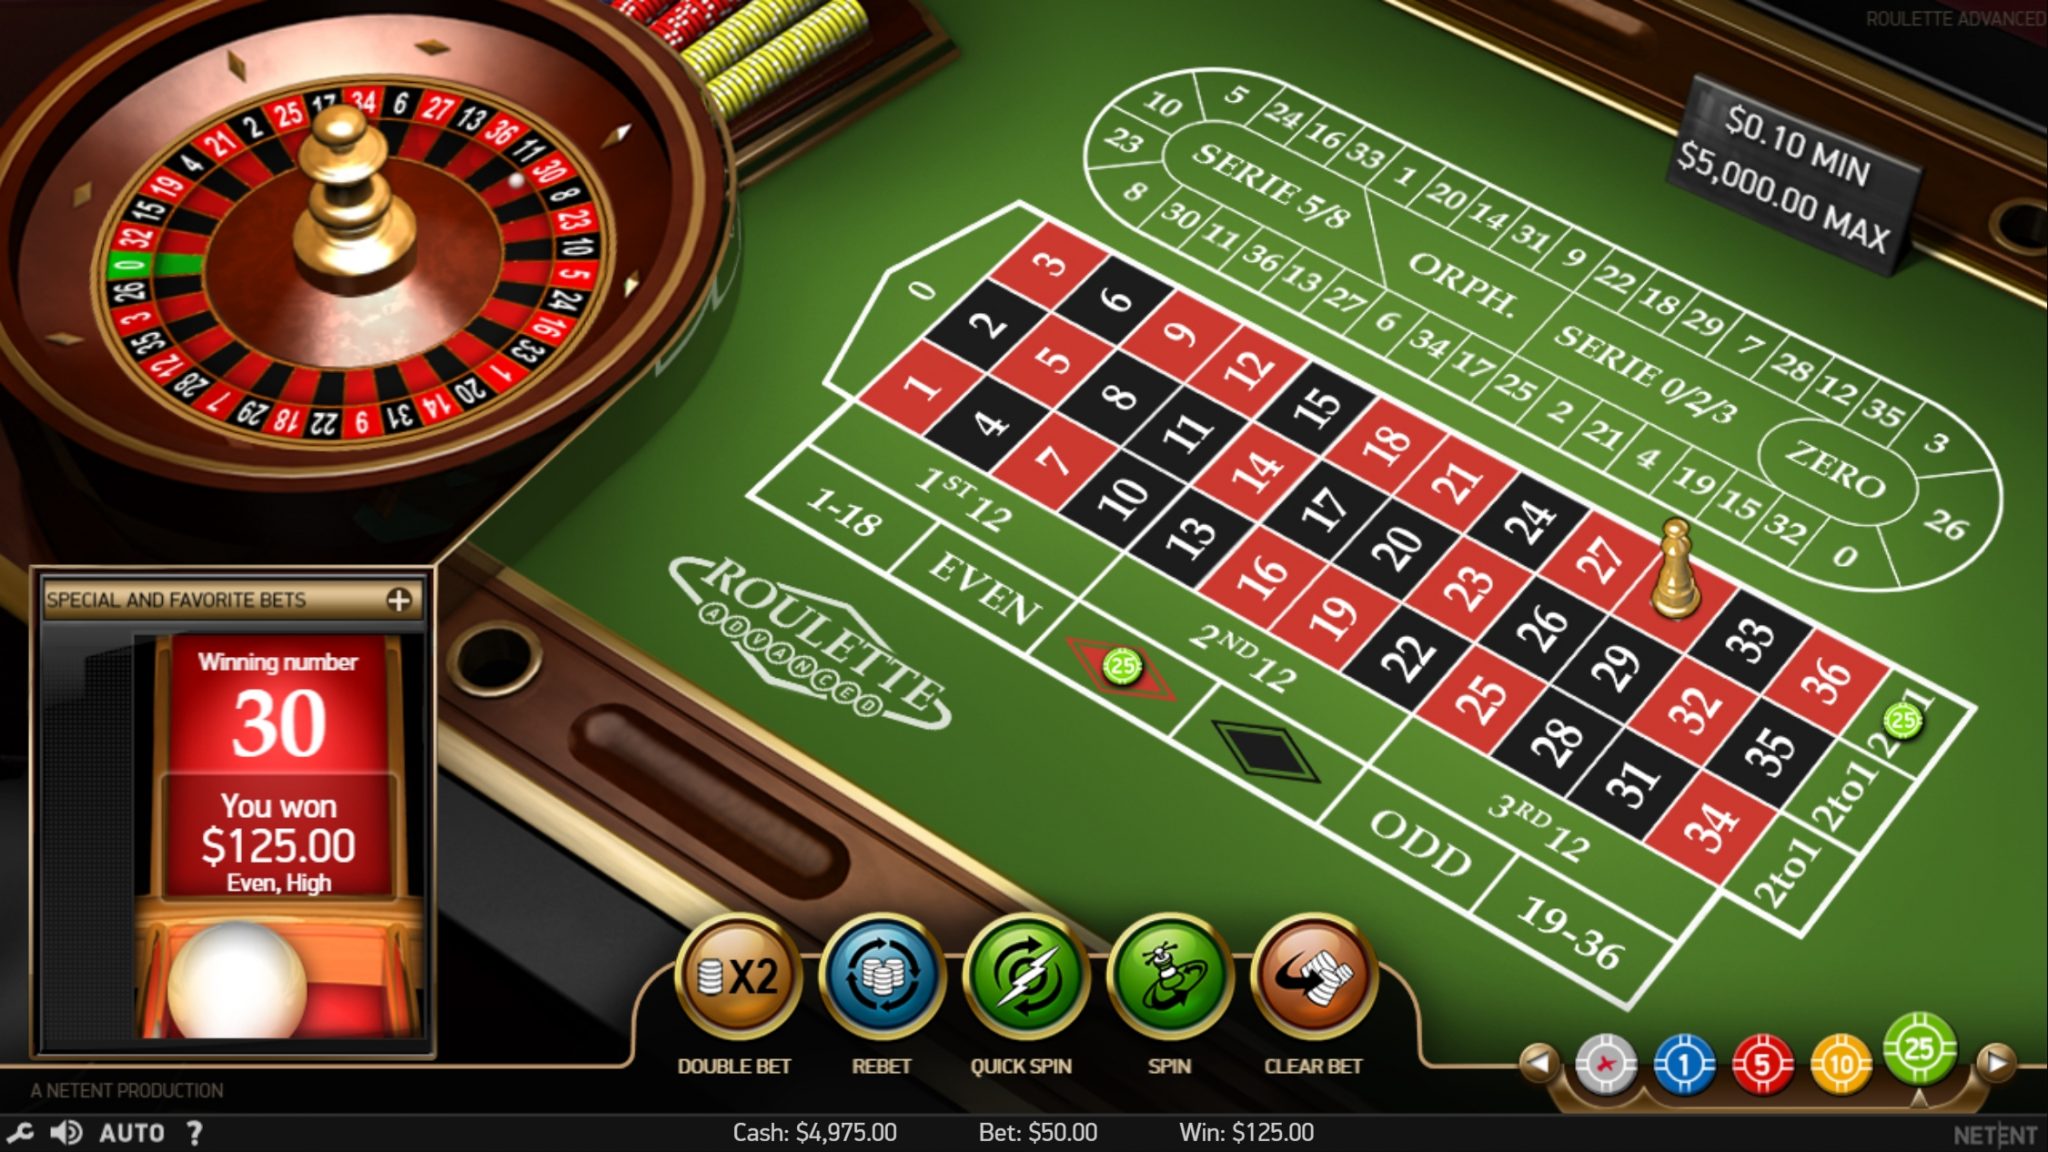 Casino table games online free карты 1000 играть бесплатно для компьютера